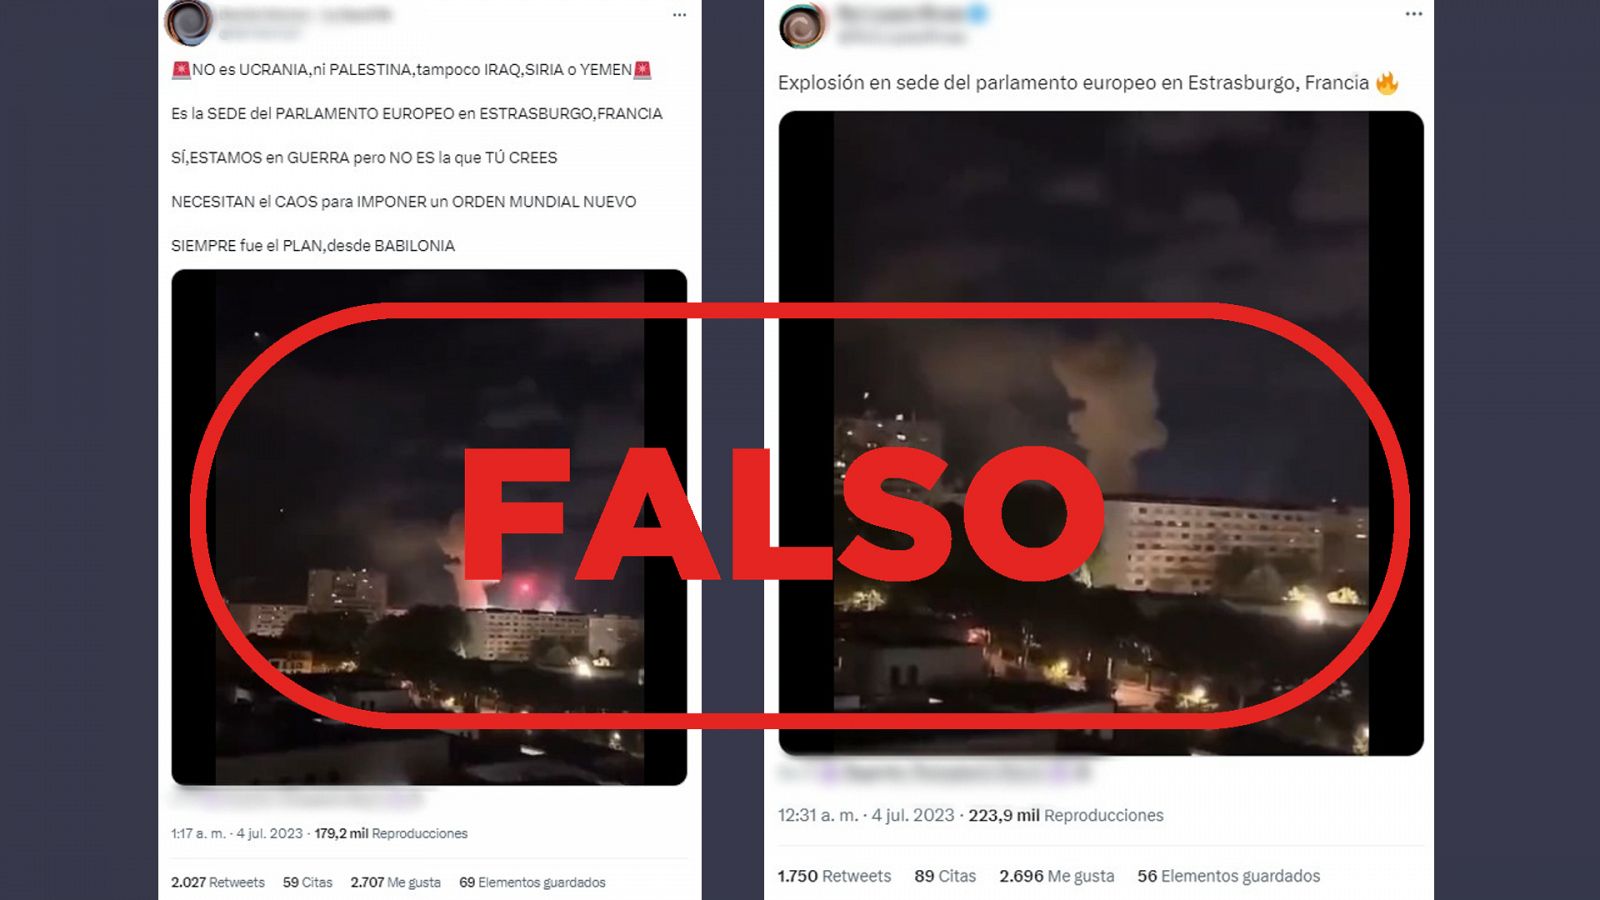 Mensajes de redes que difunden la falsa idea de que la sede del Parlamento Europeo en Estrasburgo ha registrado una explosión, con el sello de Falso de VerificaRTVE en rojo